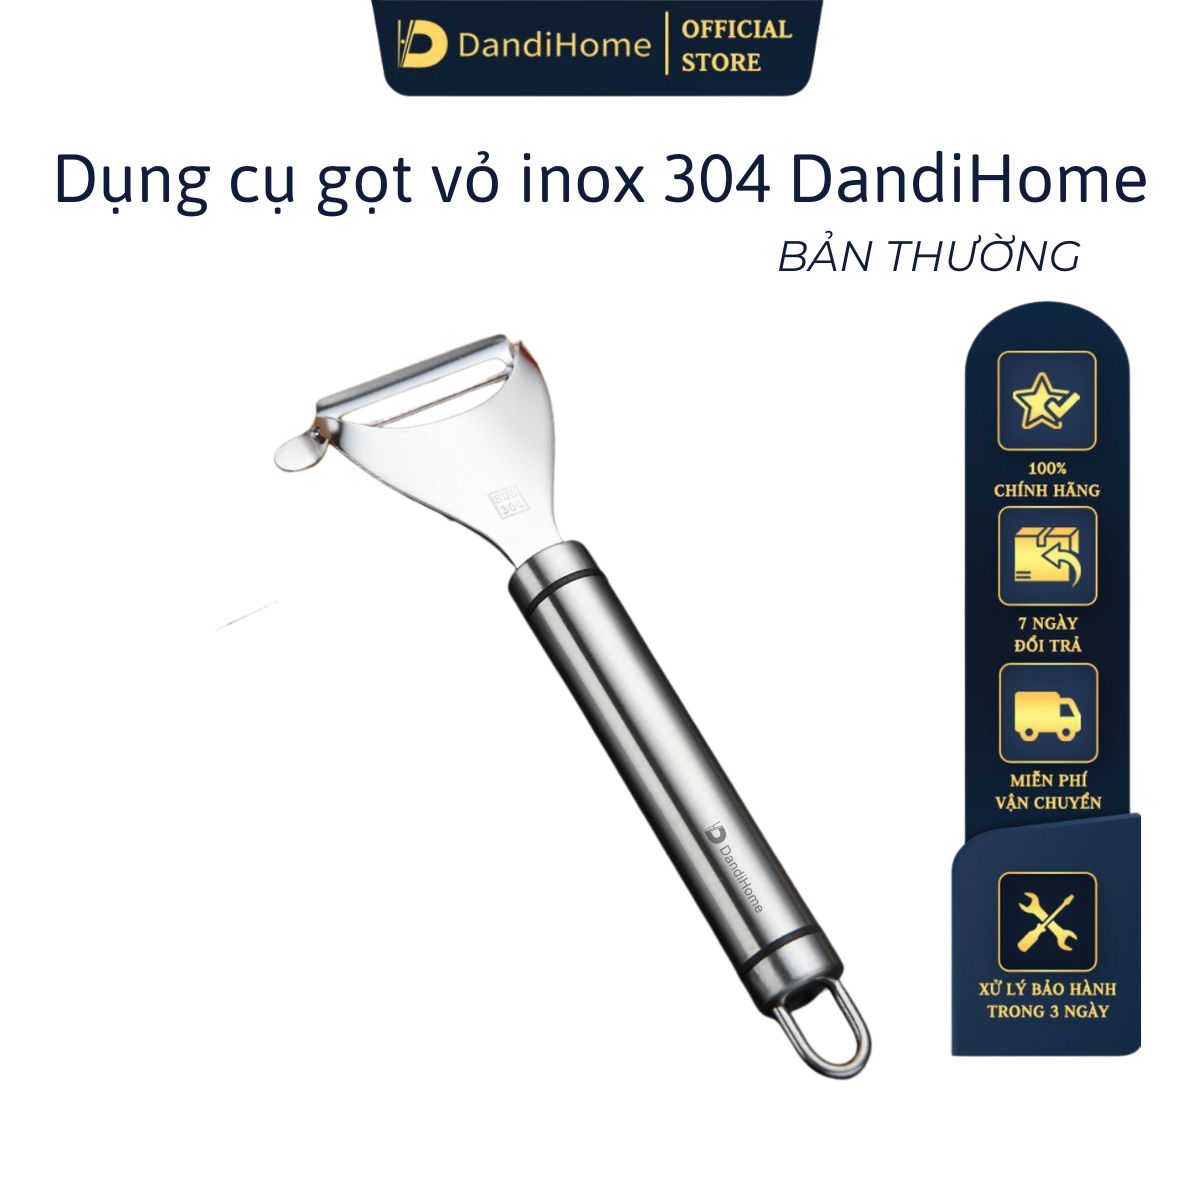 Hình ảnh Dụng cụ gọt vỏ inox 304 DandiHome